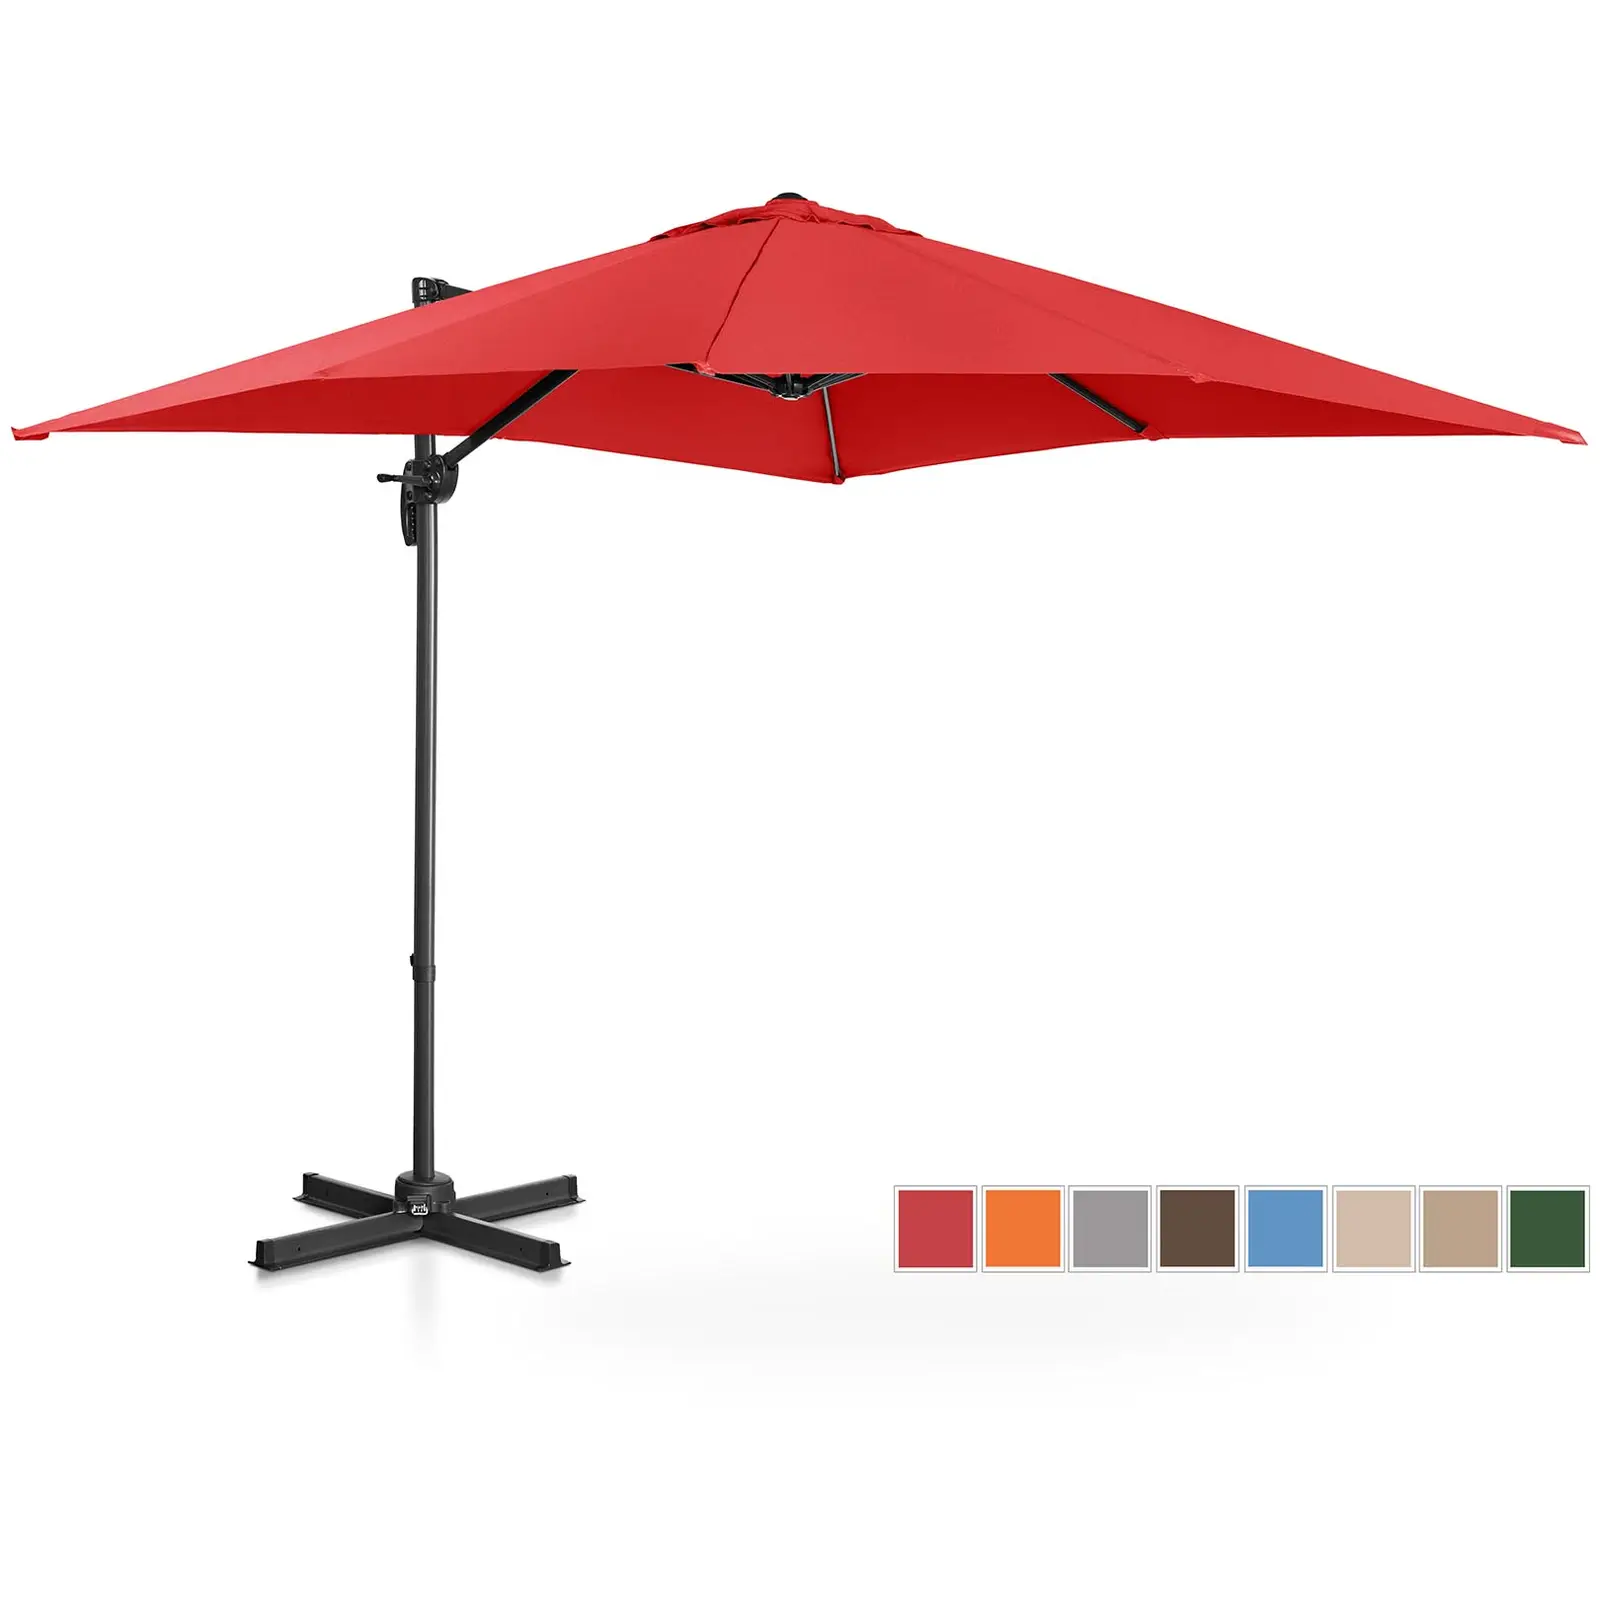 Aurinkovarjo - riippuva - punainen - neliö - 250 x 250 cm - kääntyvä